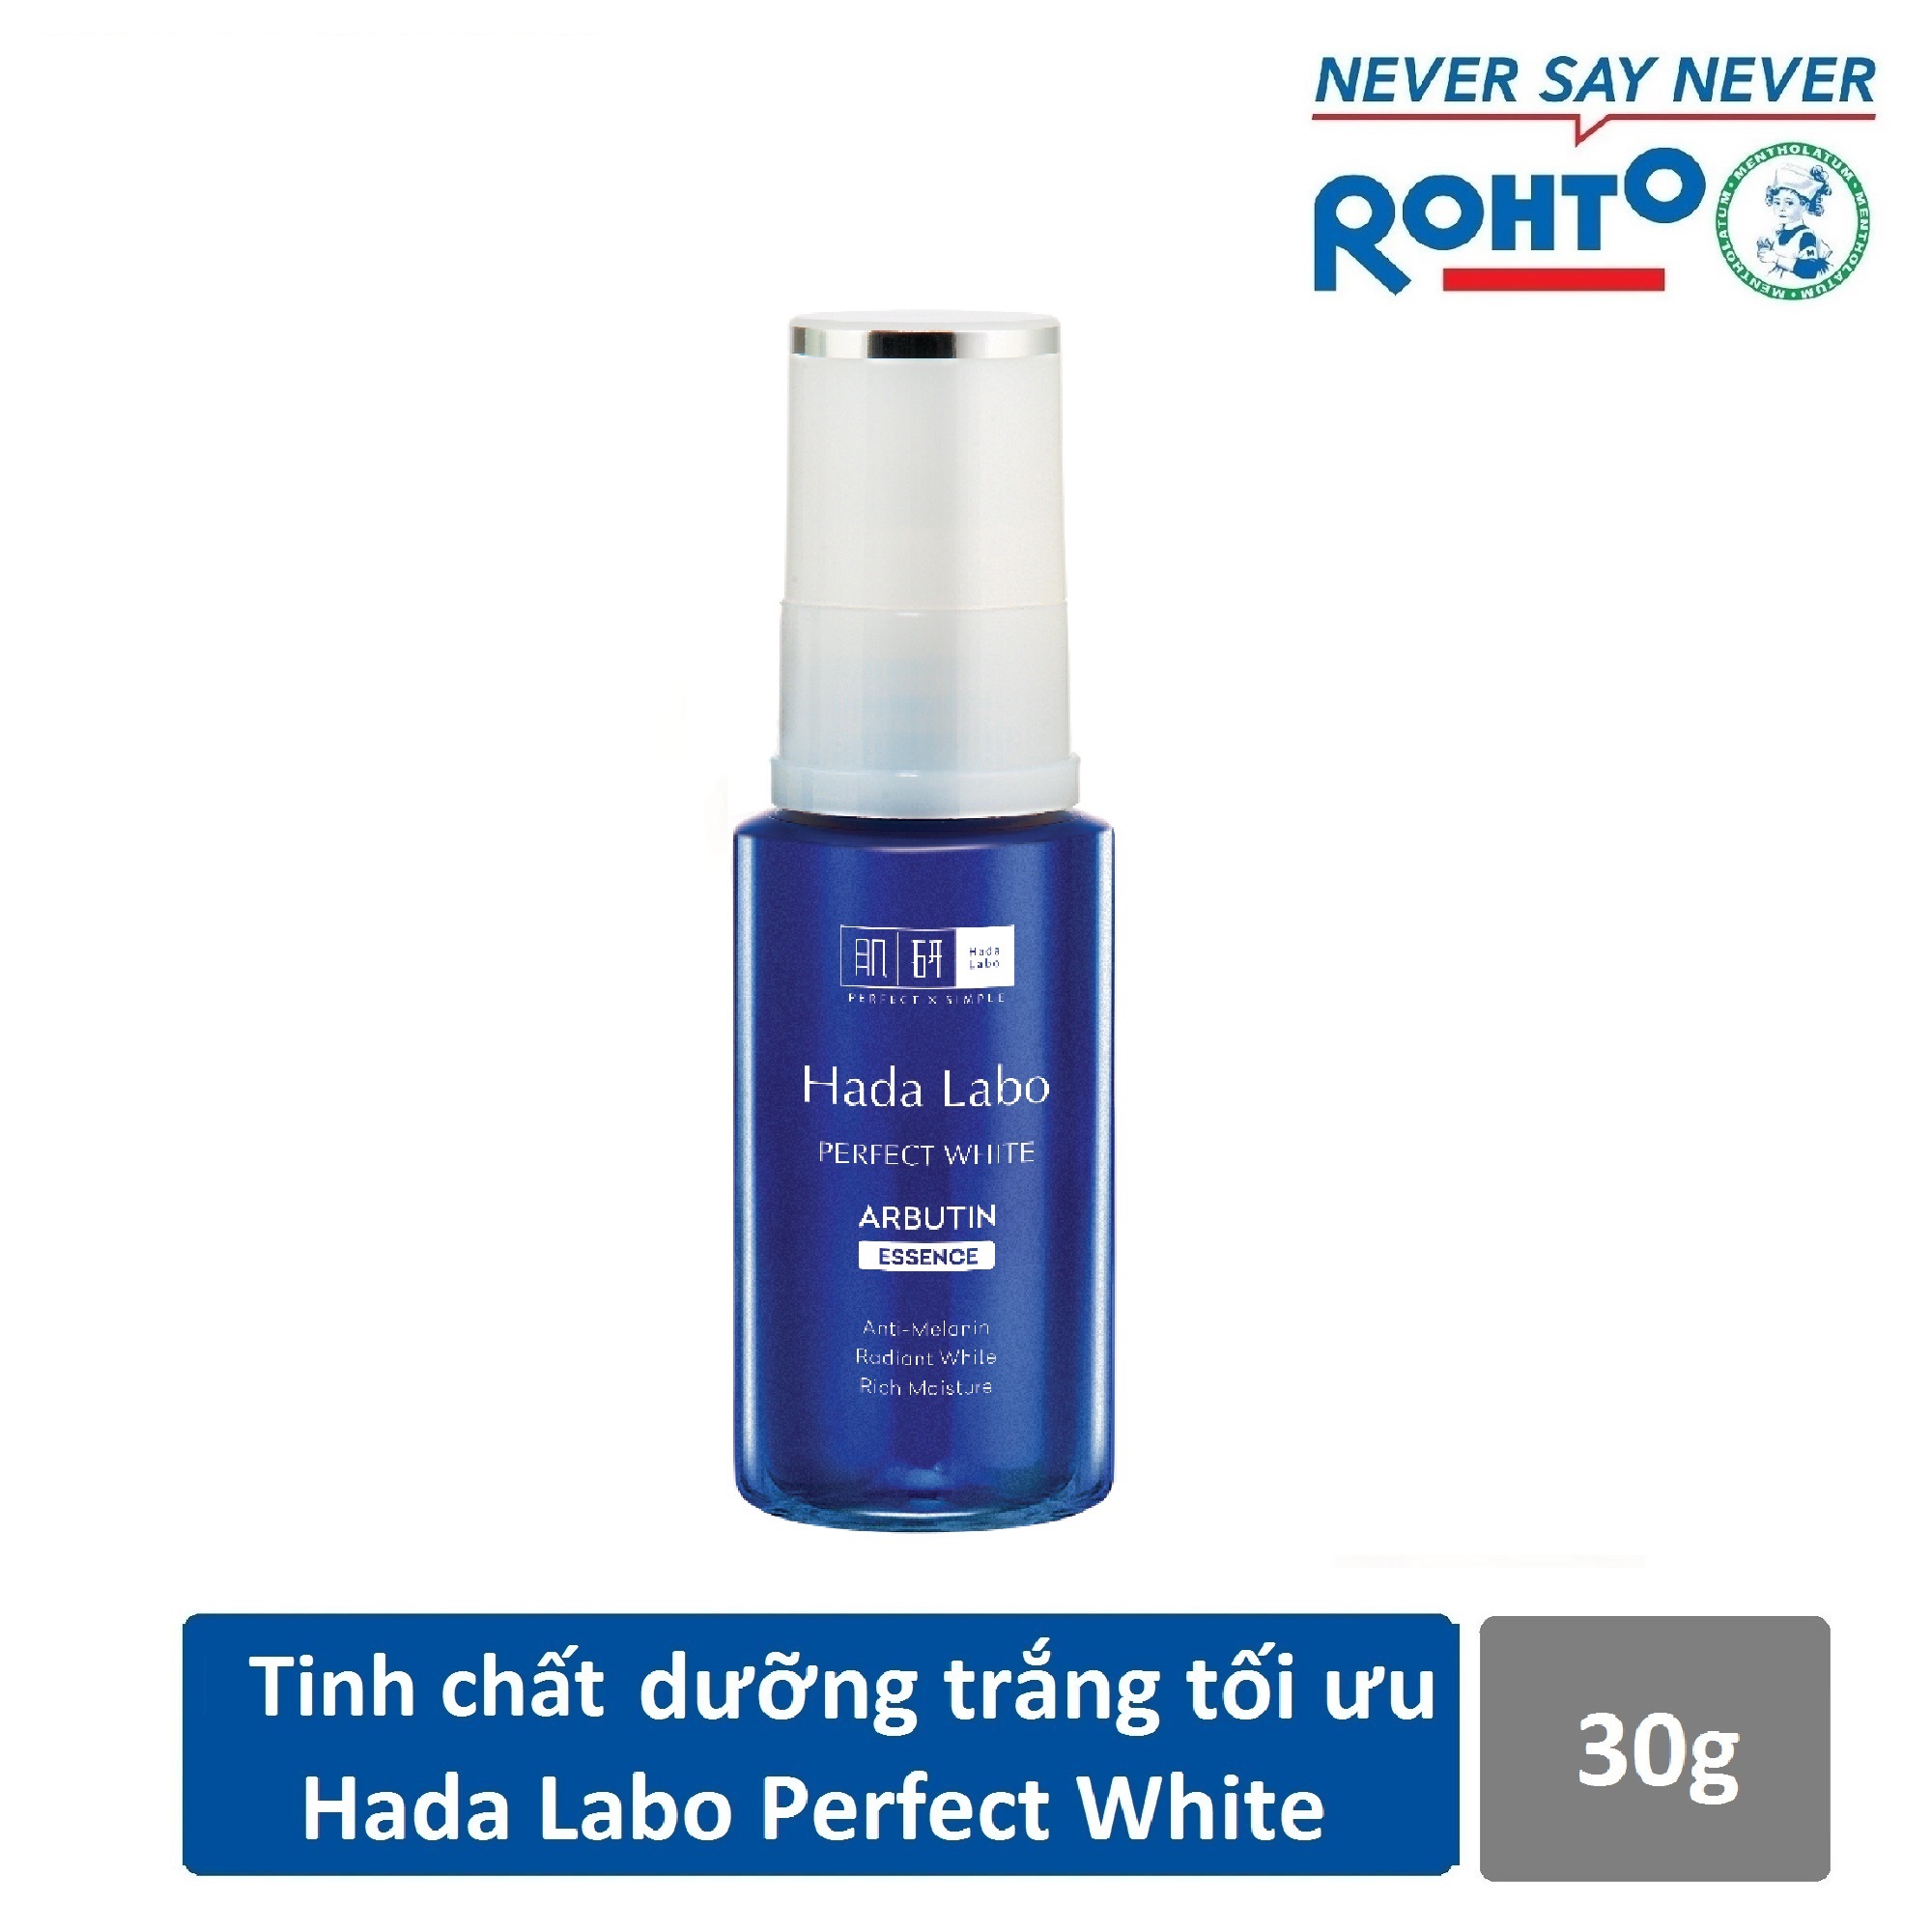 Tinh chất dưỡng trắng tối ưu Hada Labo Perfect White Essence 30g